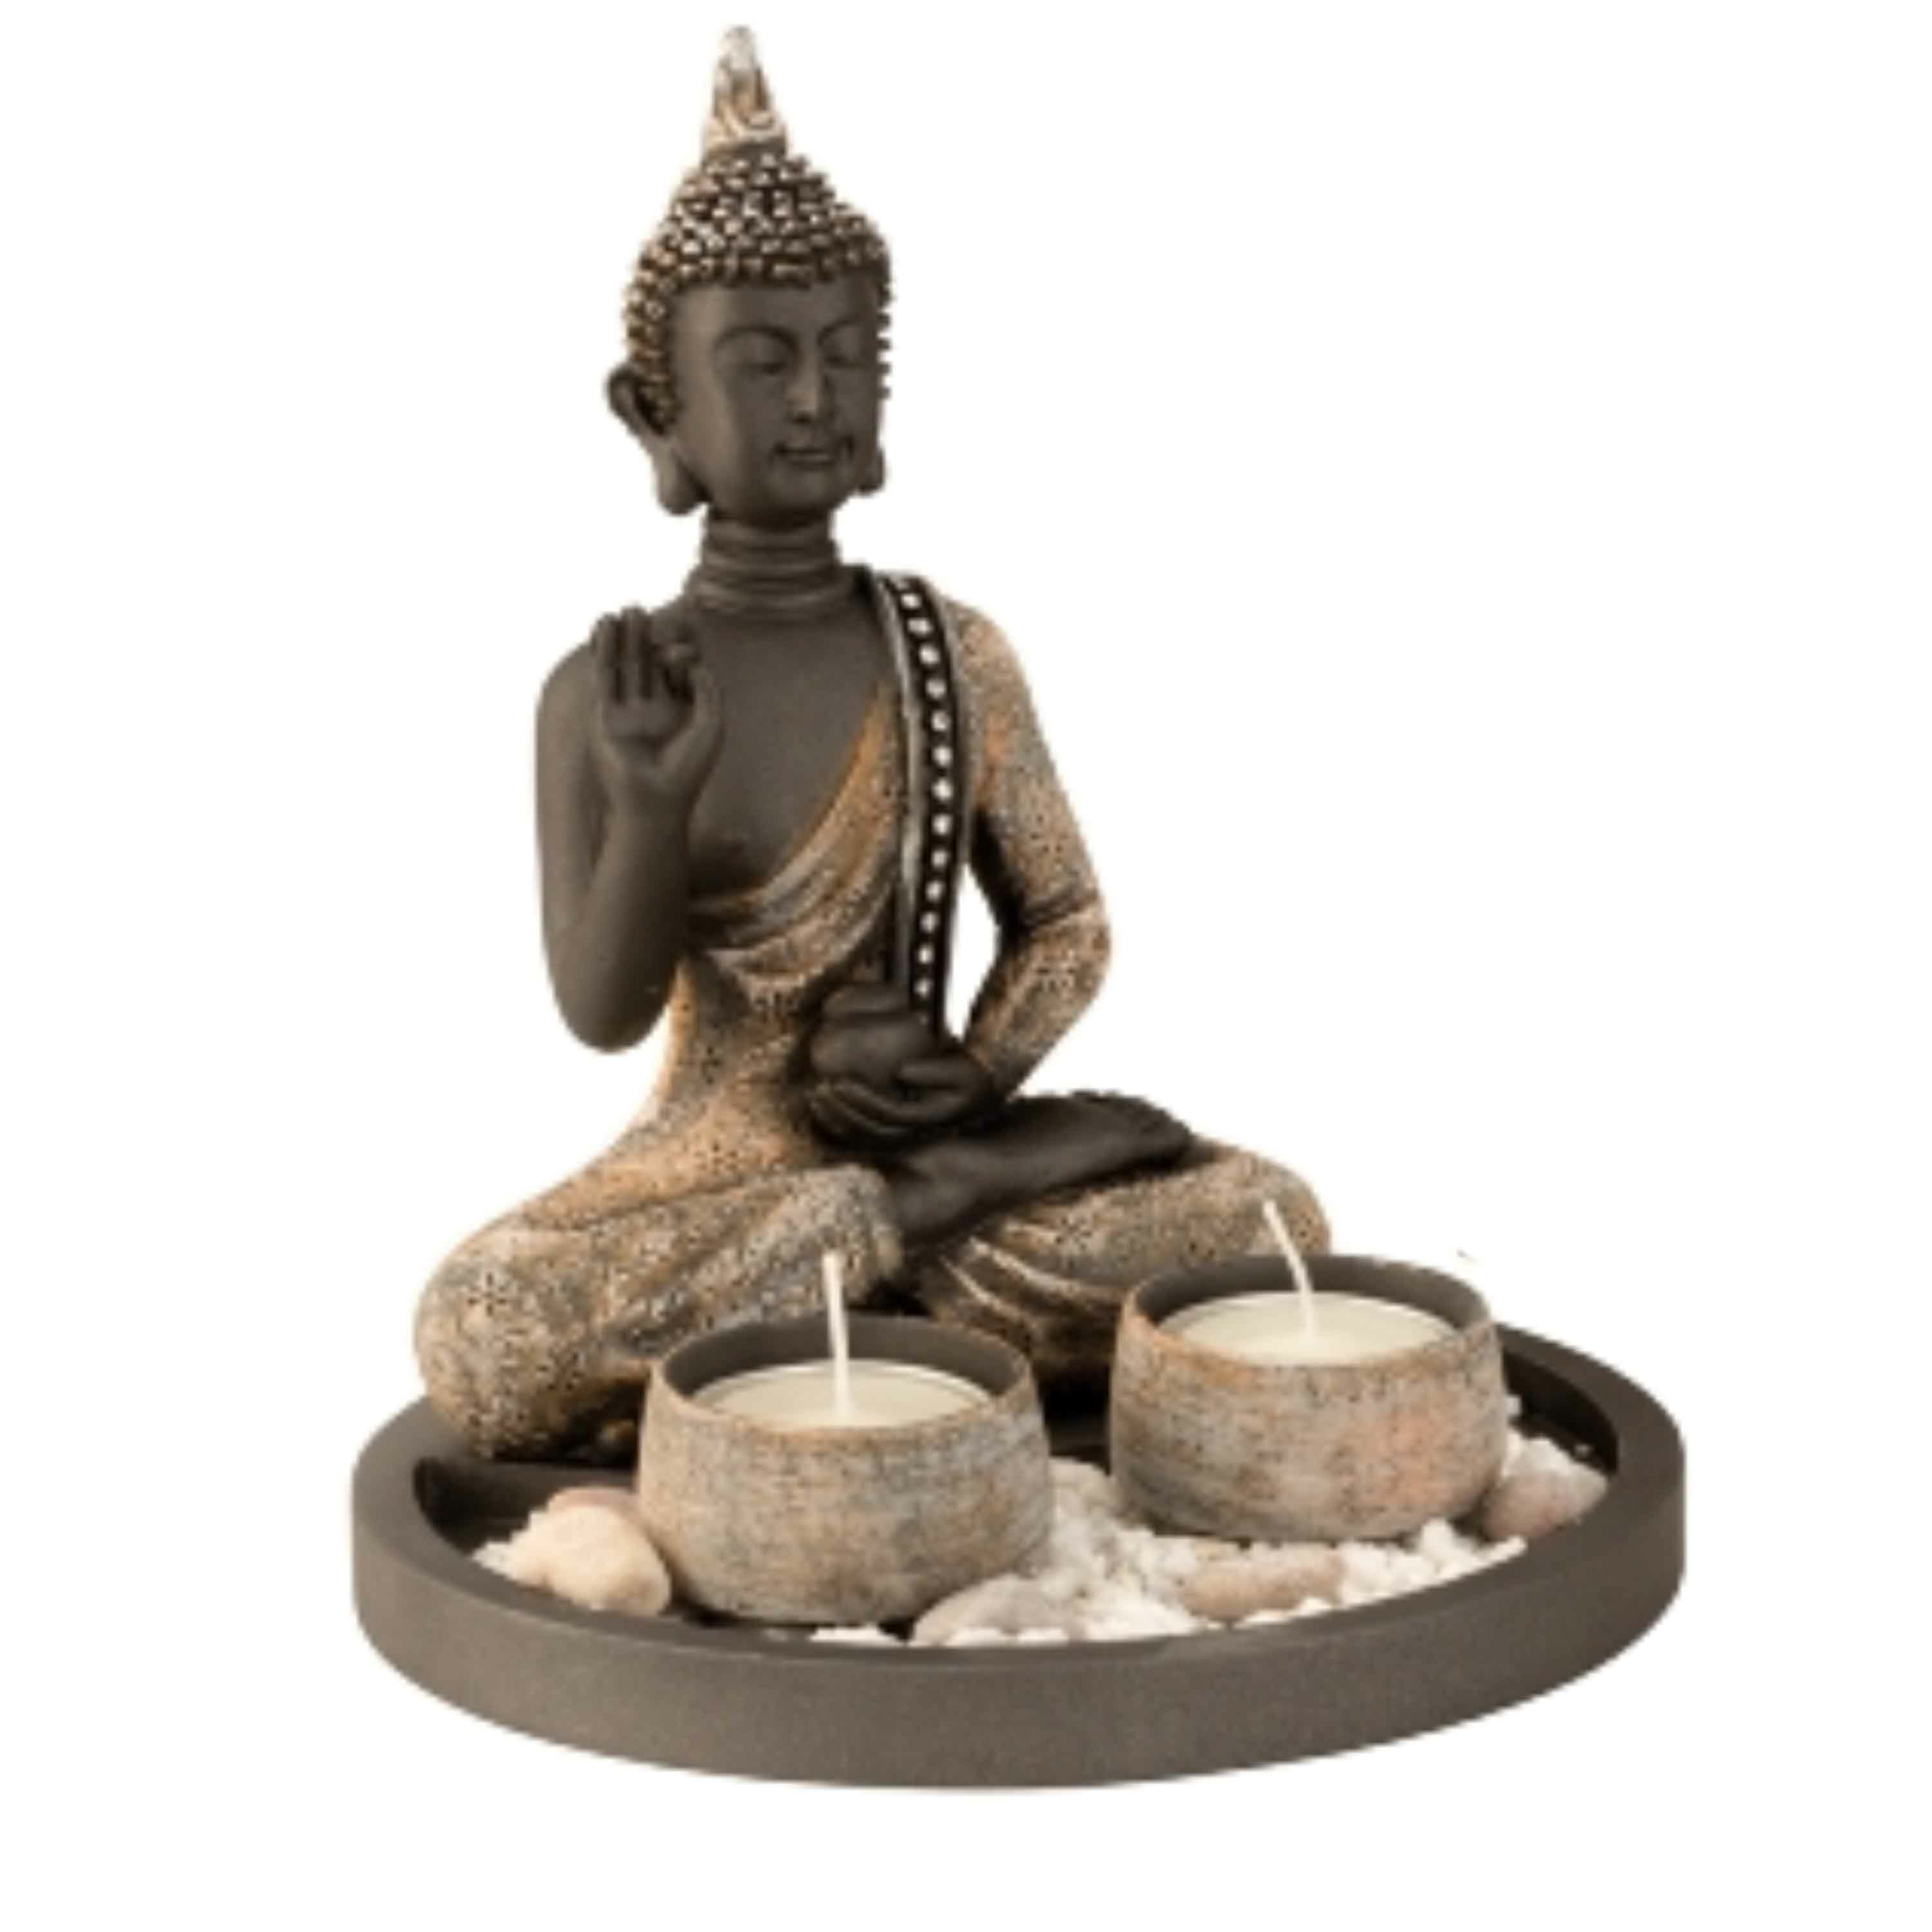 Merkloos Boeddha beeldje met 2 kaarshouders op schaal - kunststeen - goud/grijs - 18 x 21 cm - deco artikel -